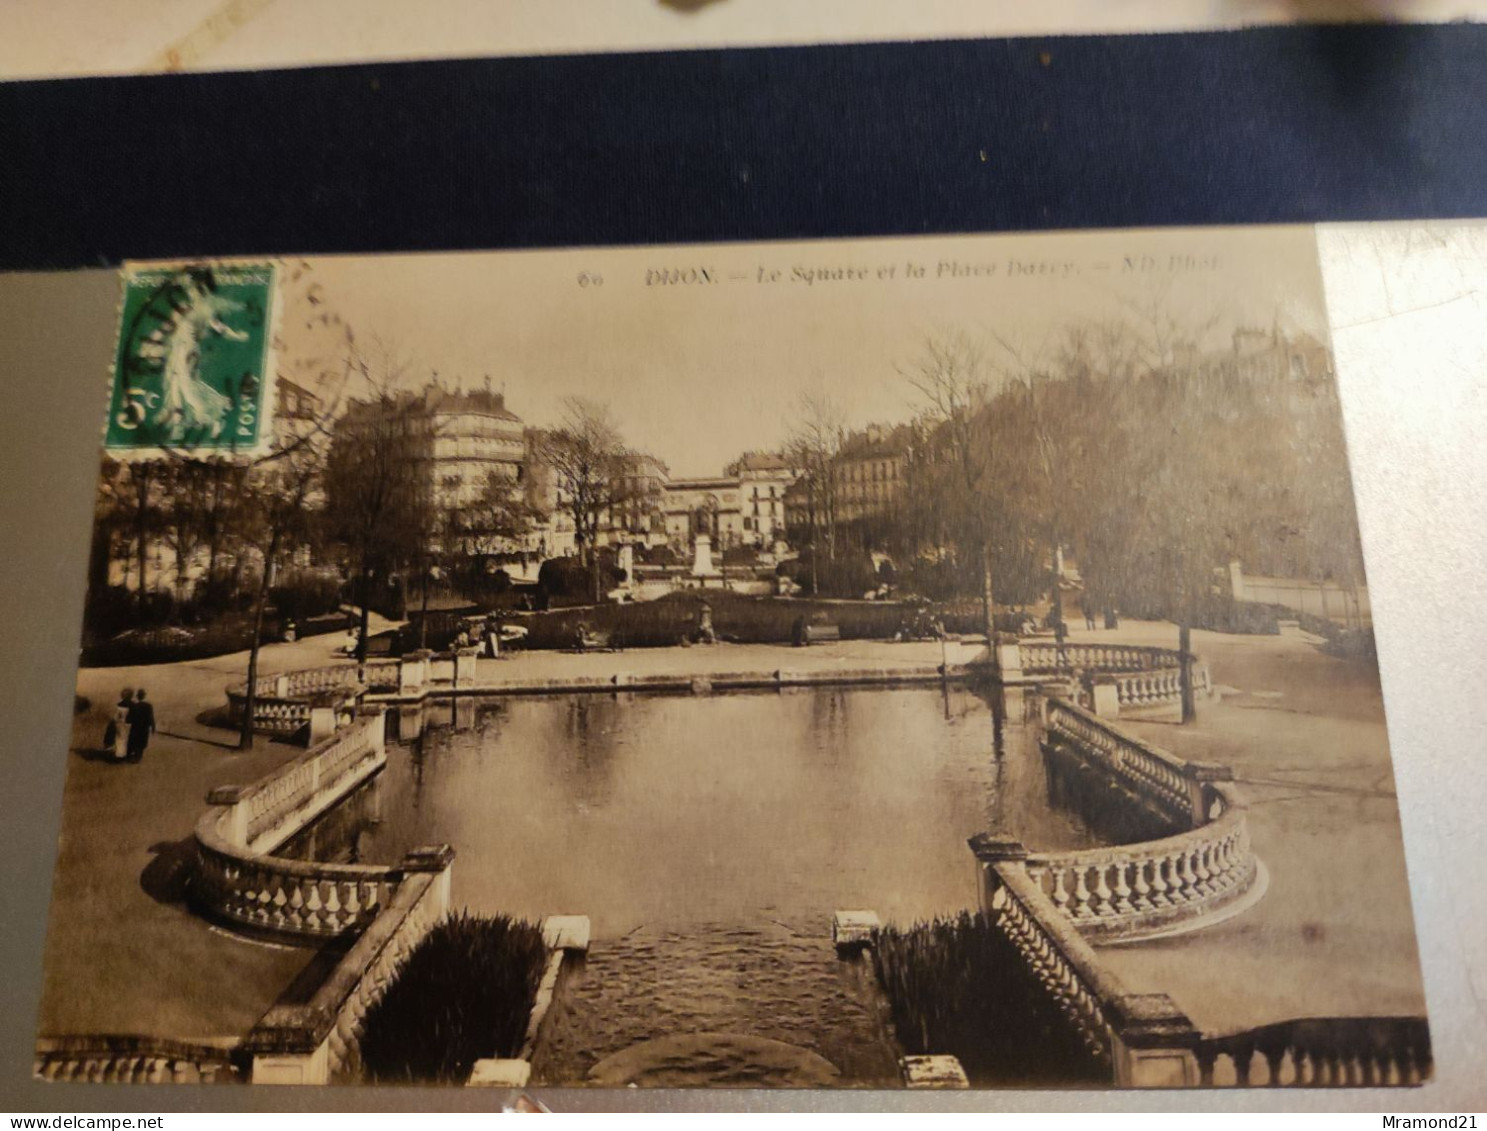 Lot de 25 cartes postales anciennes de France